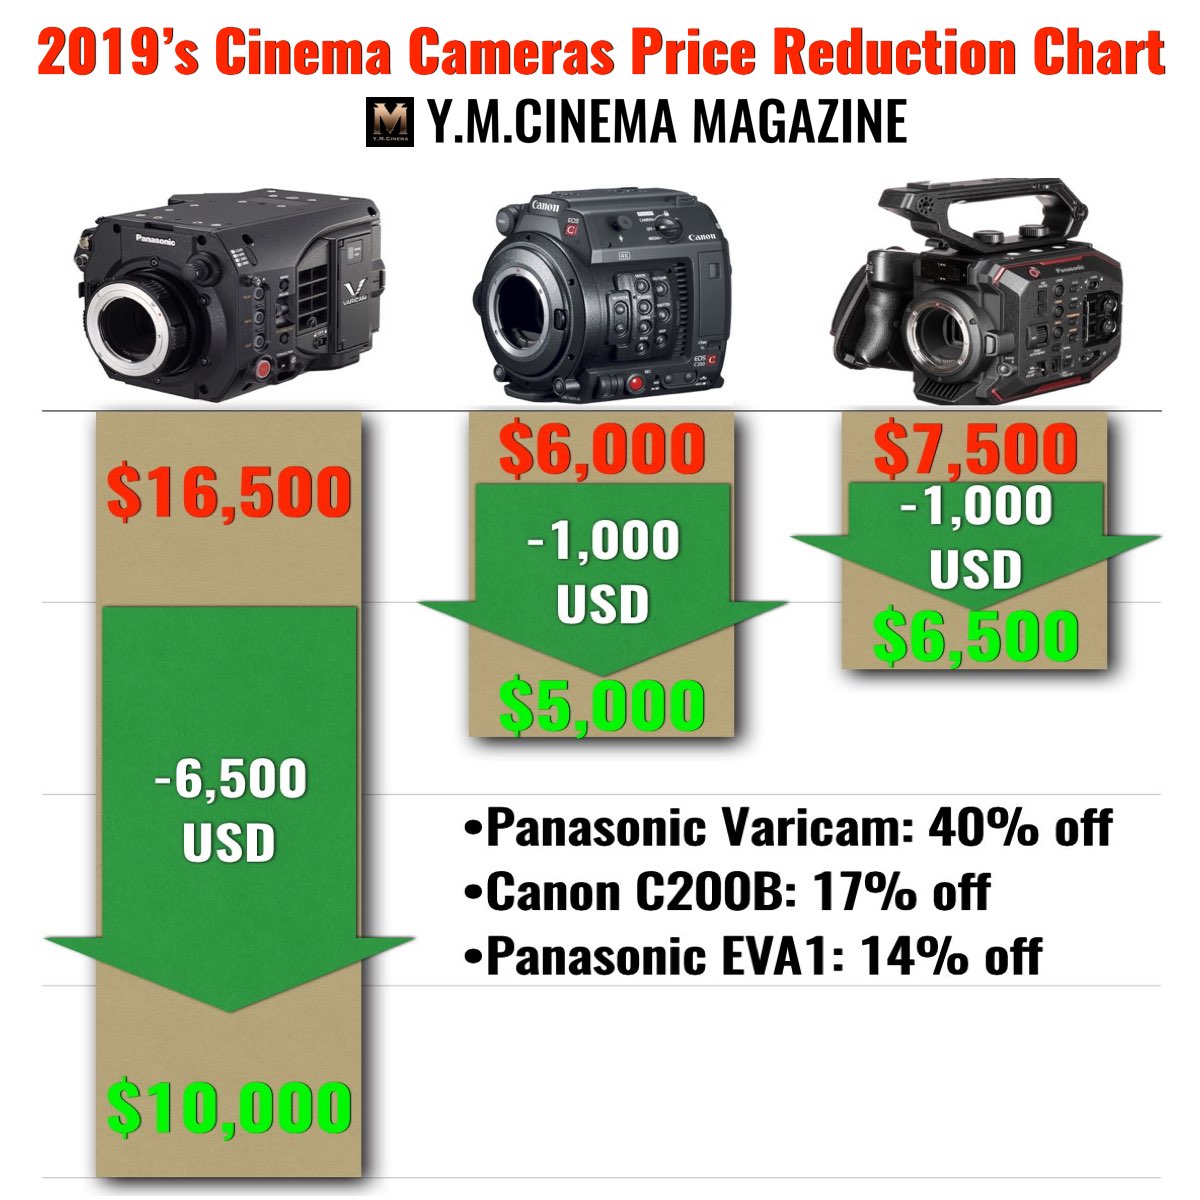 Tableau de réduction des prix des caméras de cinéma de 2019